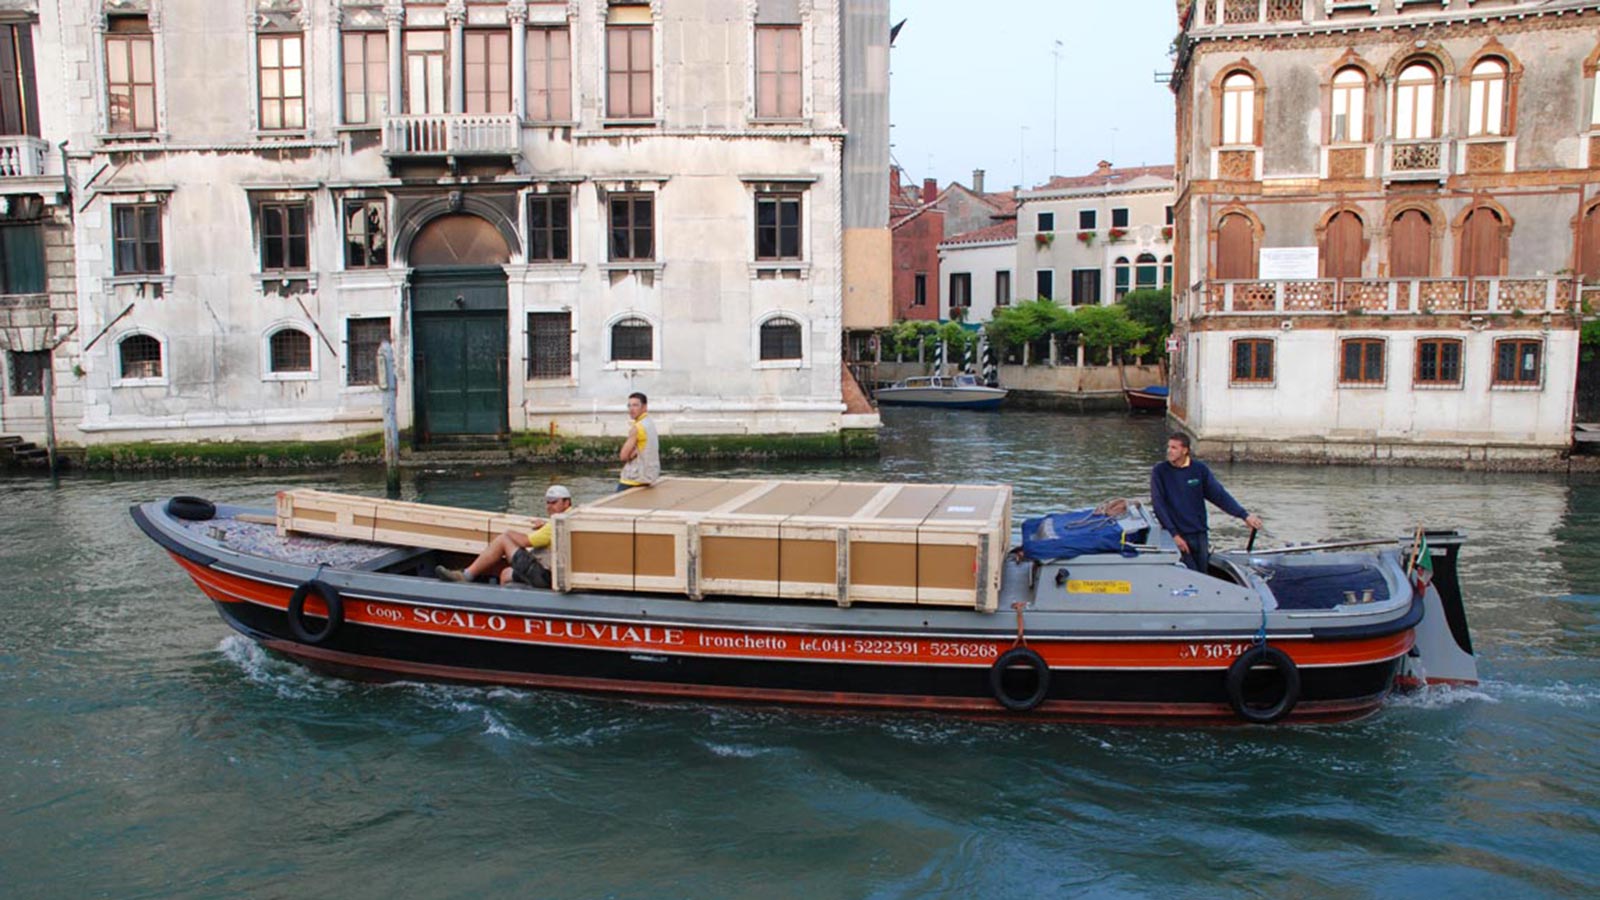 Transporting goods around the Venetian lagoon